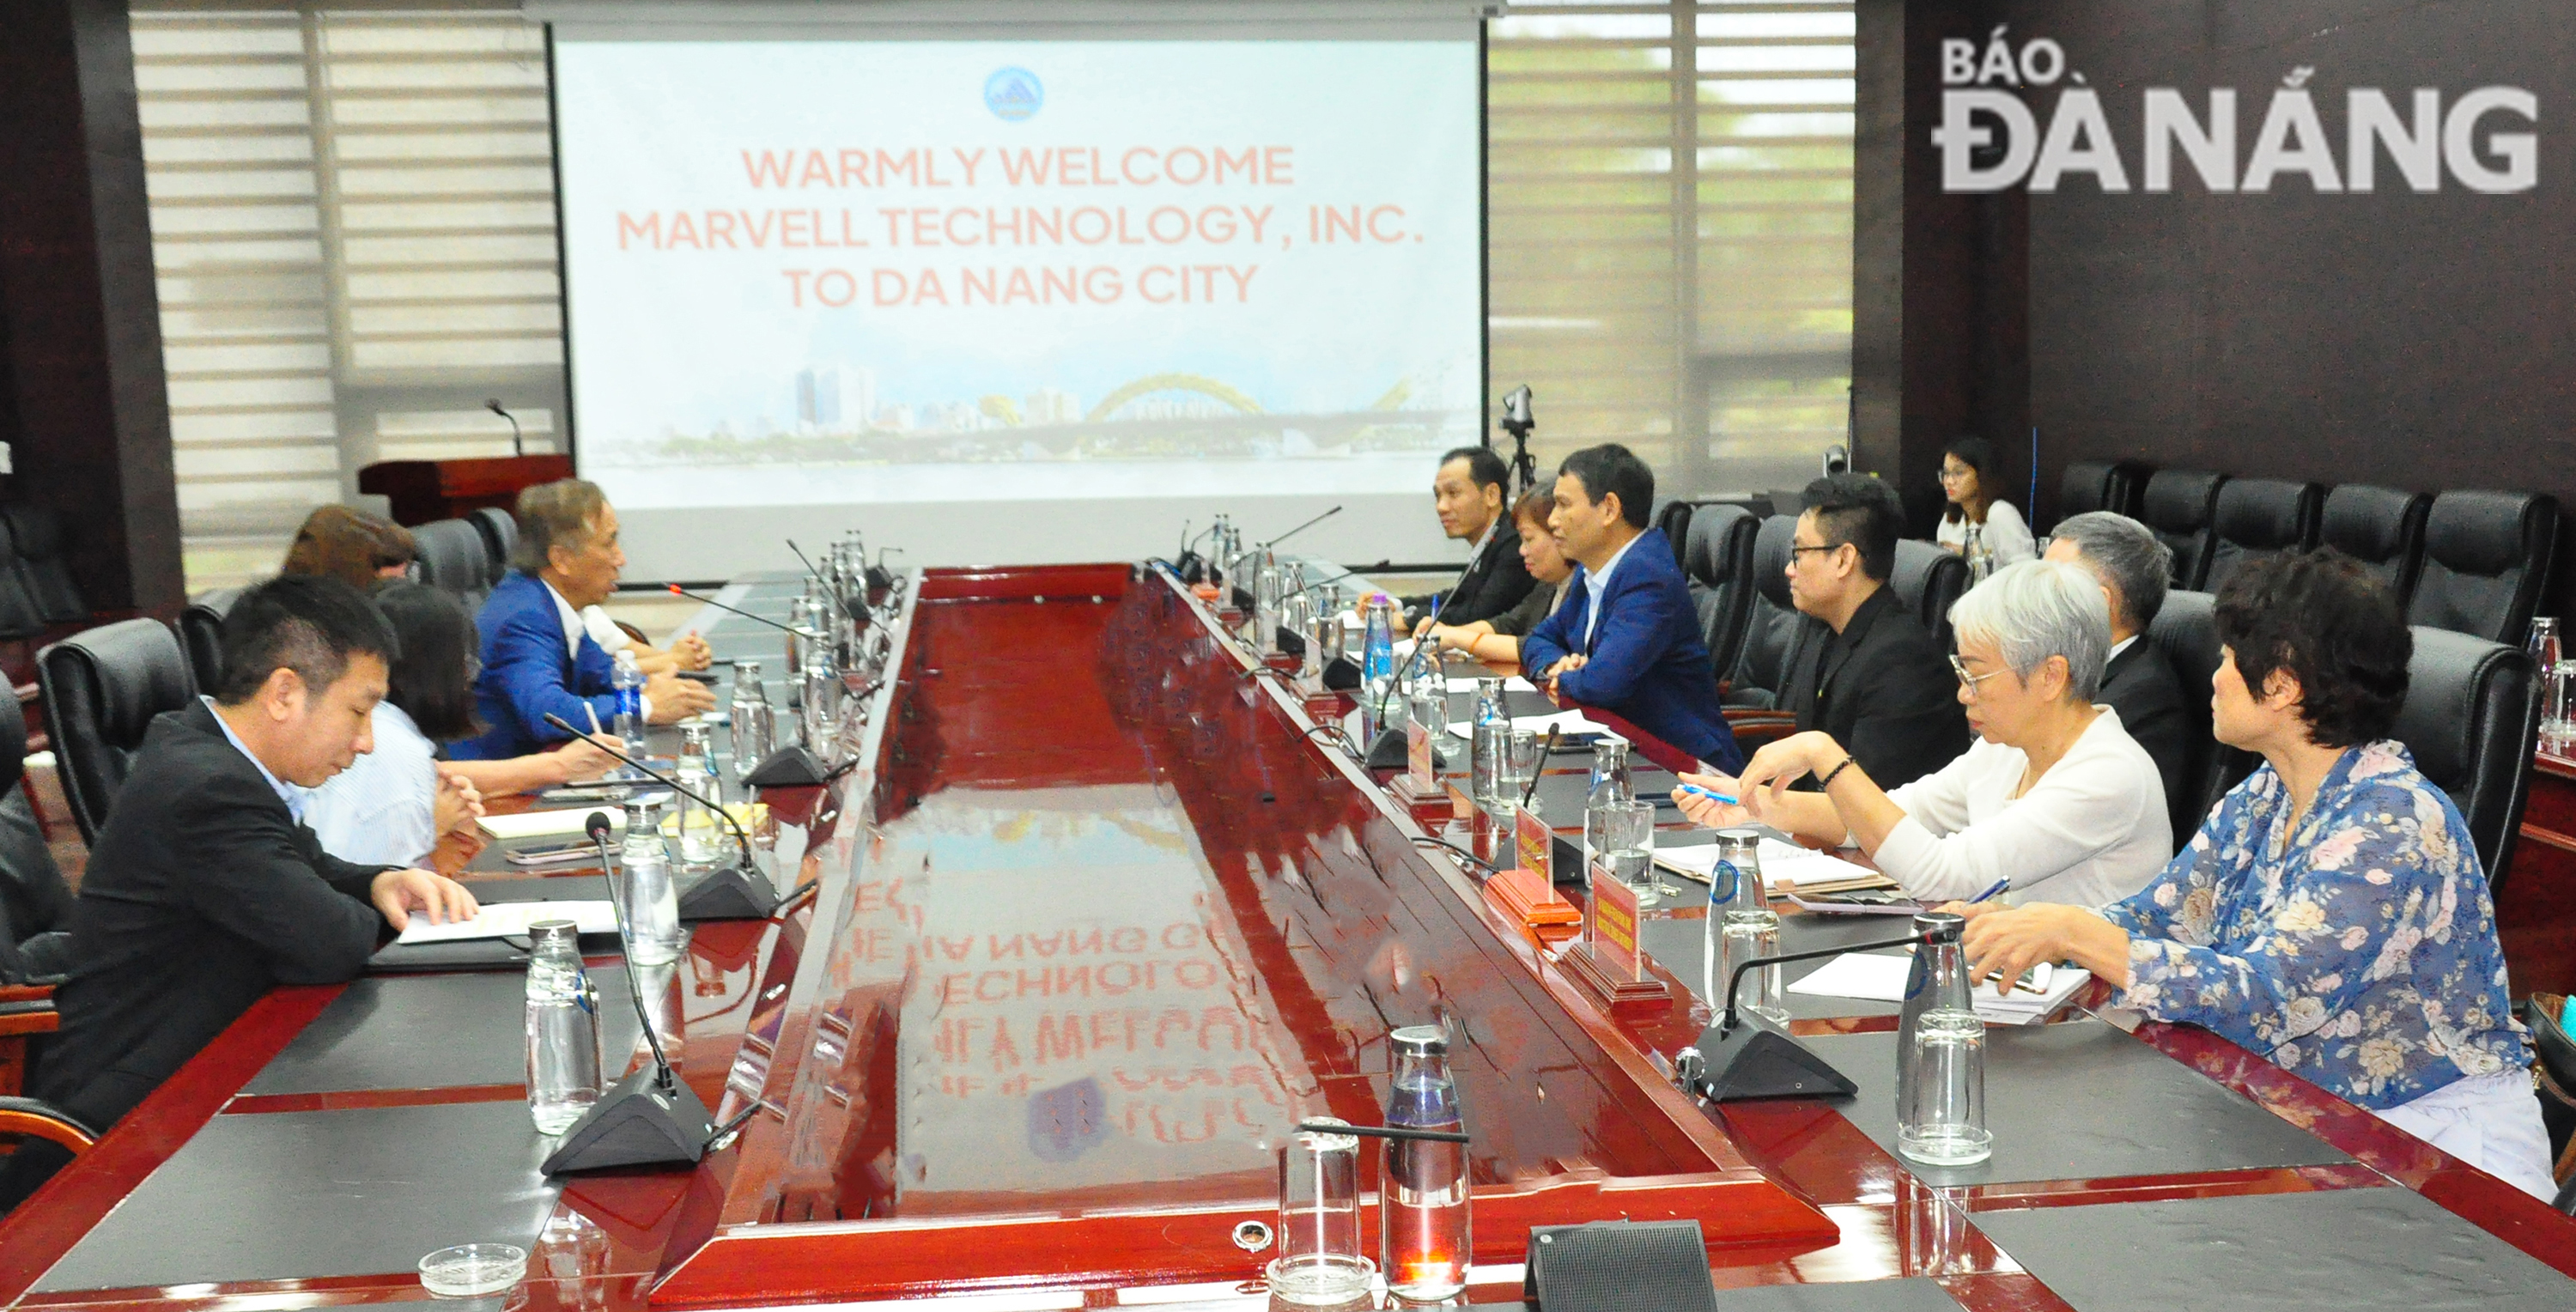 Công ty Marvell tìm hiểu môi trường, cơ hội hợp tác đầu tư vi mạch bán dẫn tại Đà Nẵng